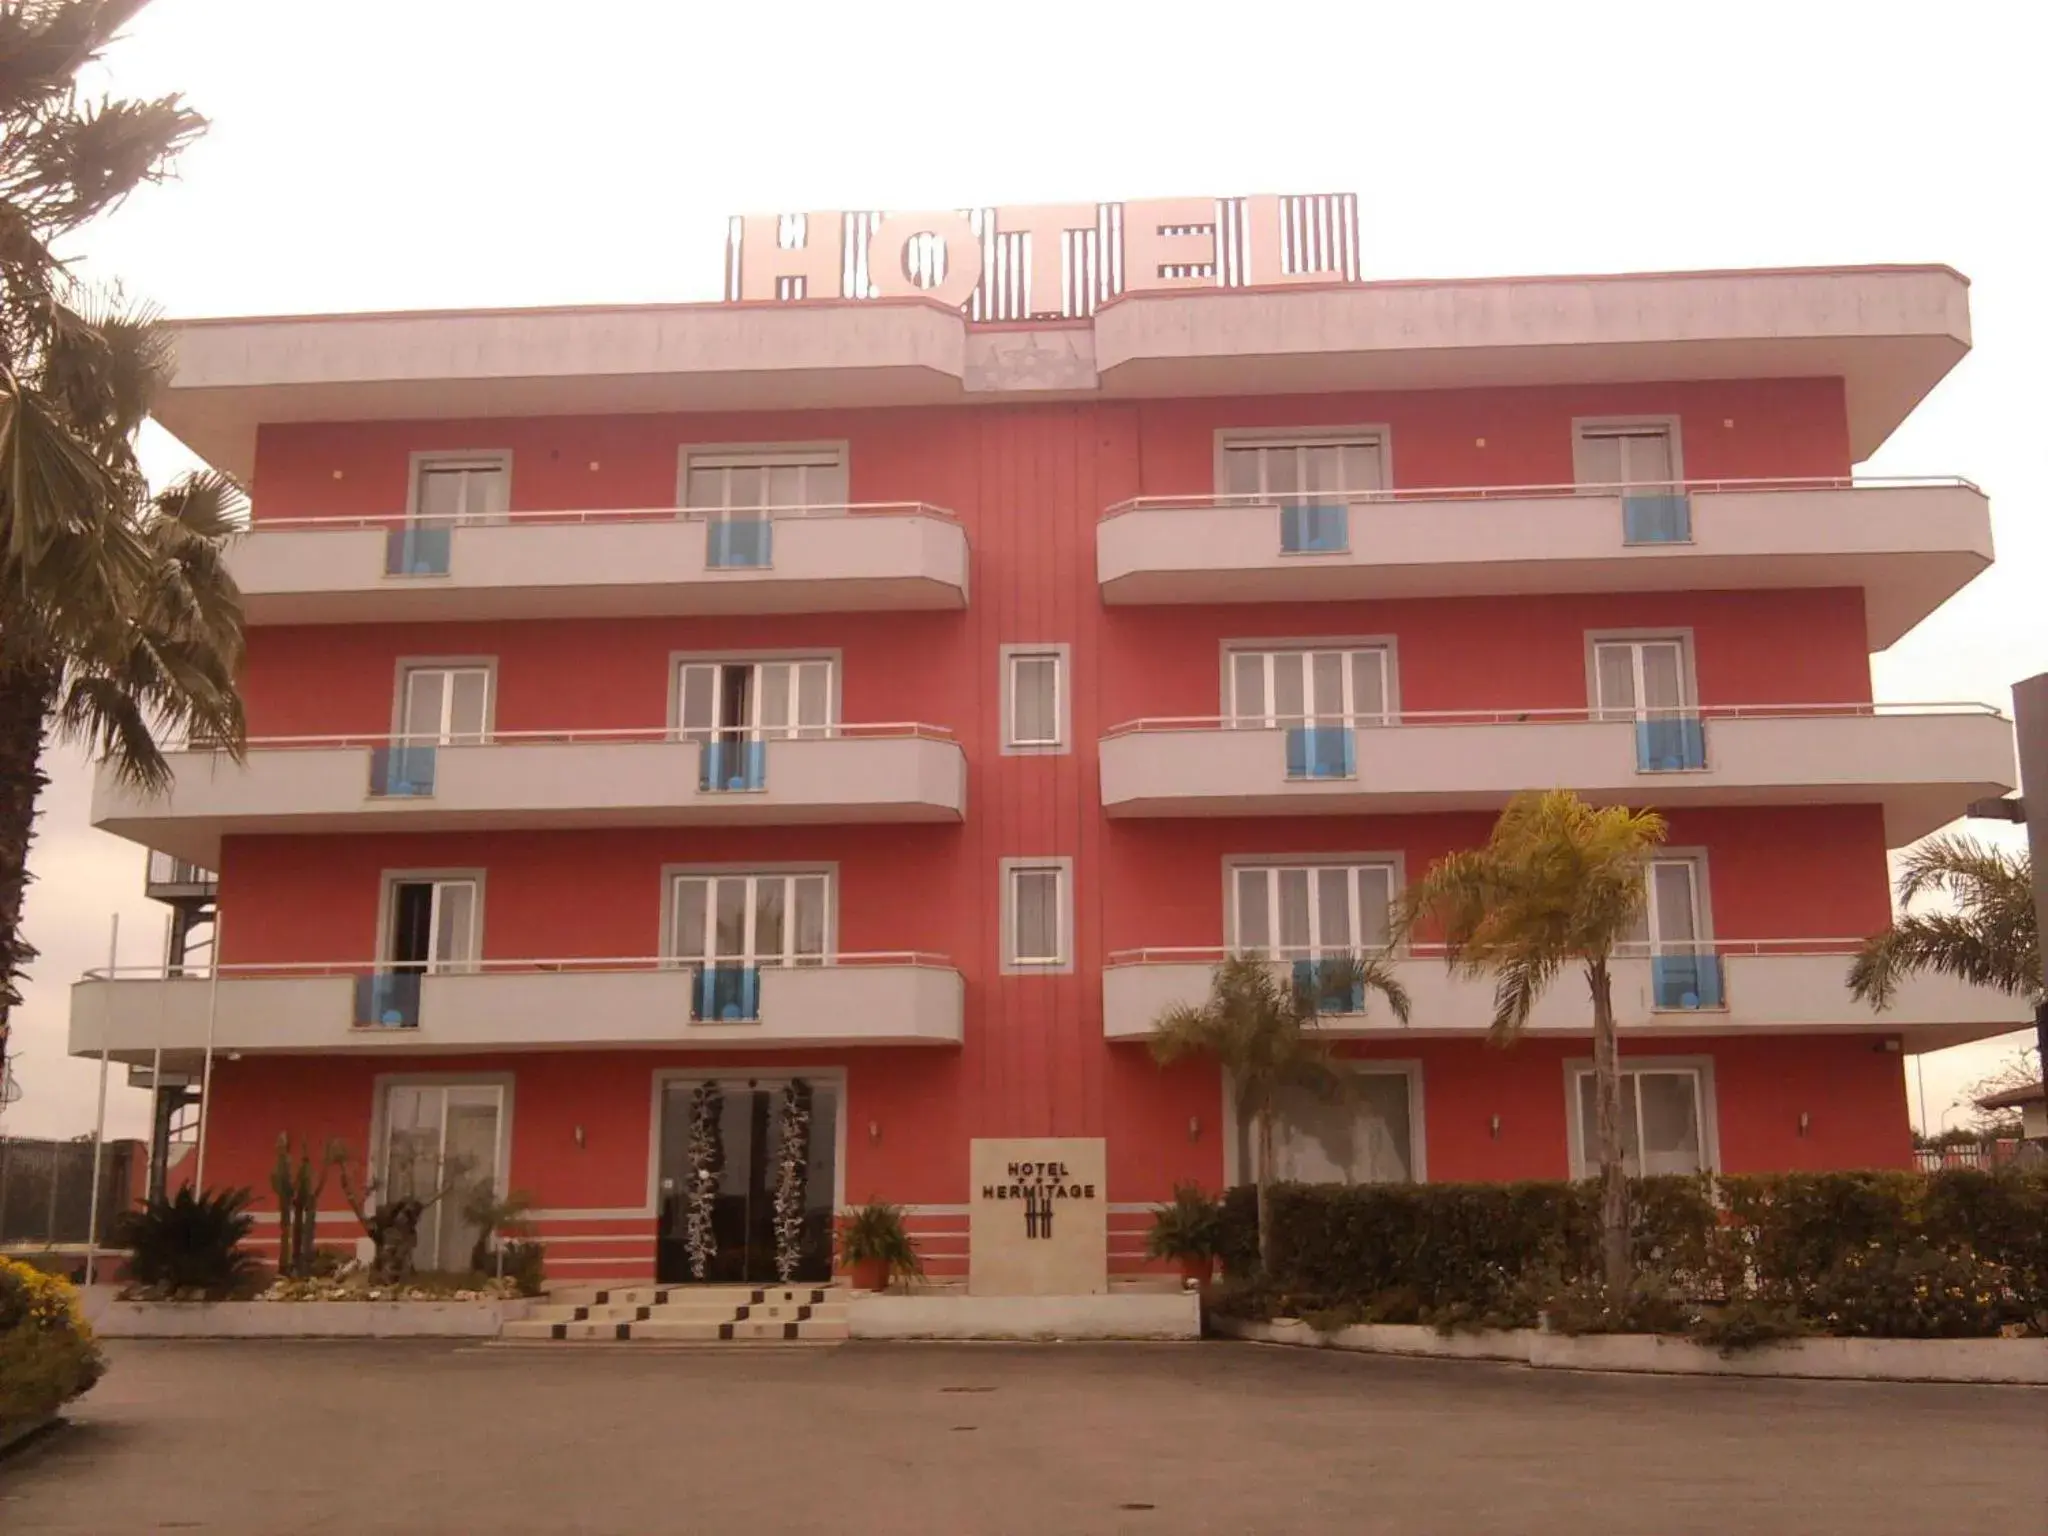 Facade/entrance, Property Building in Hotel Hermitage